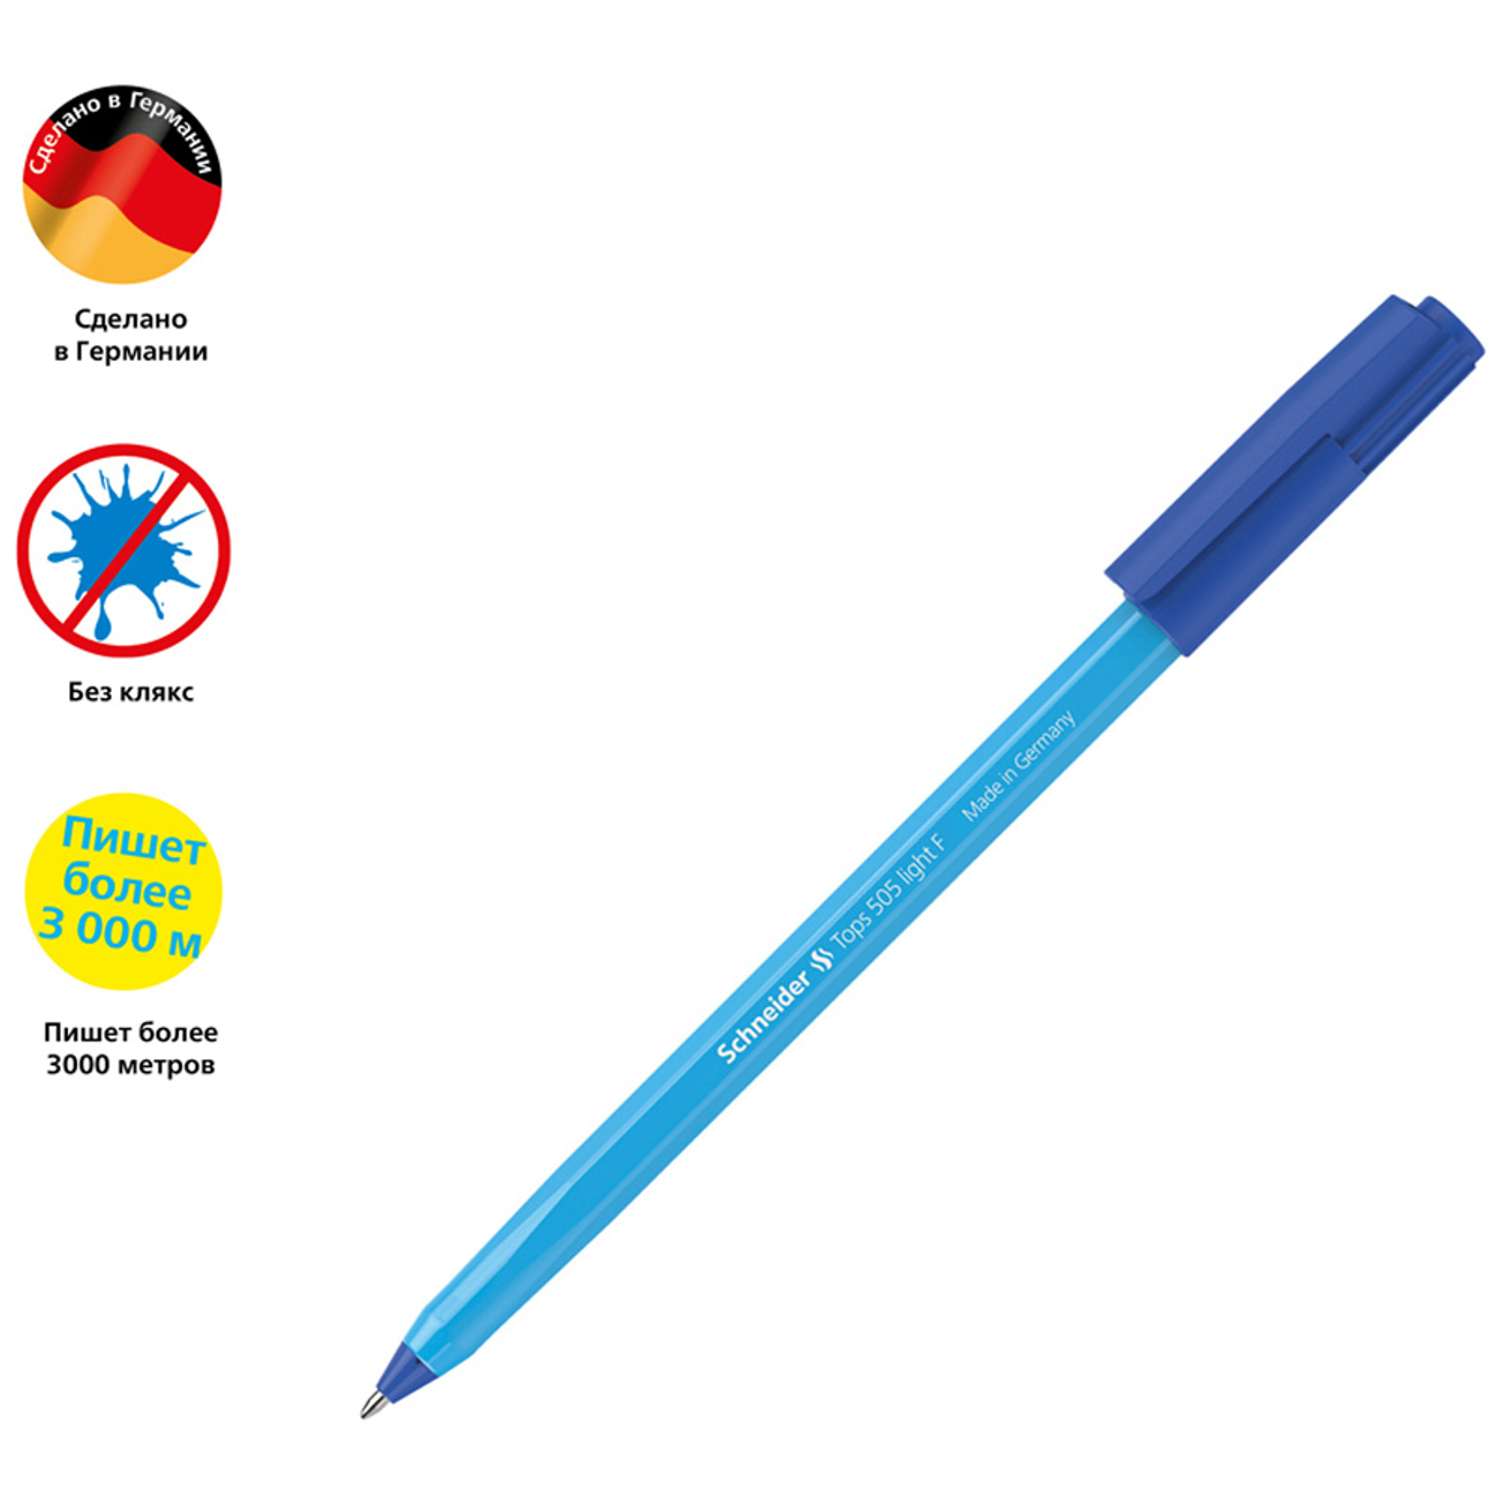 Ручка шариковая SCHNEIDER Tops 505 F синяя 0.8 мм голубой корпус 50 шт - фото 2